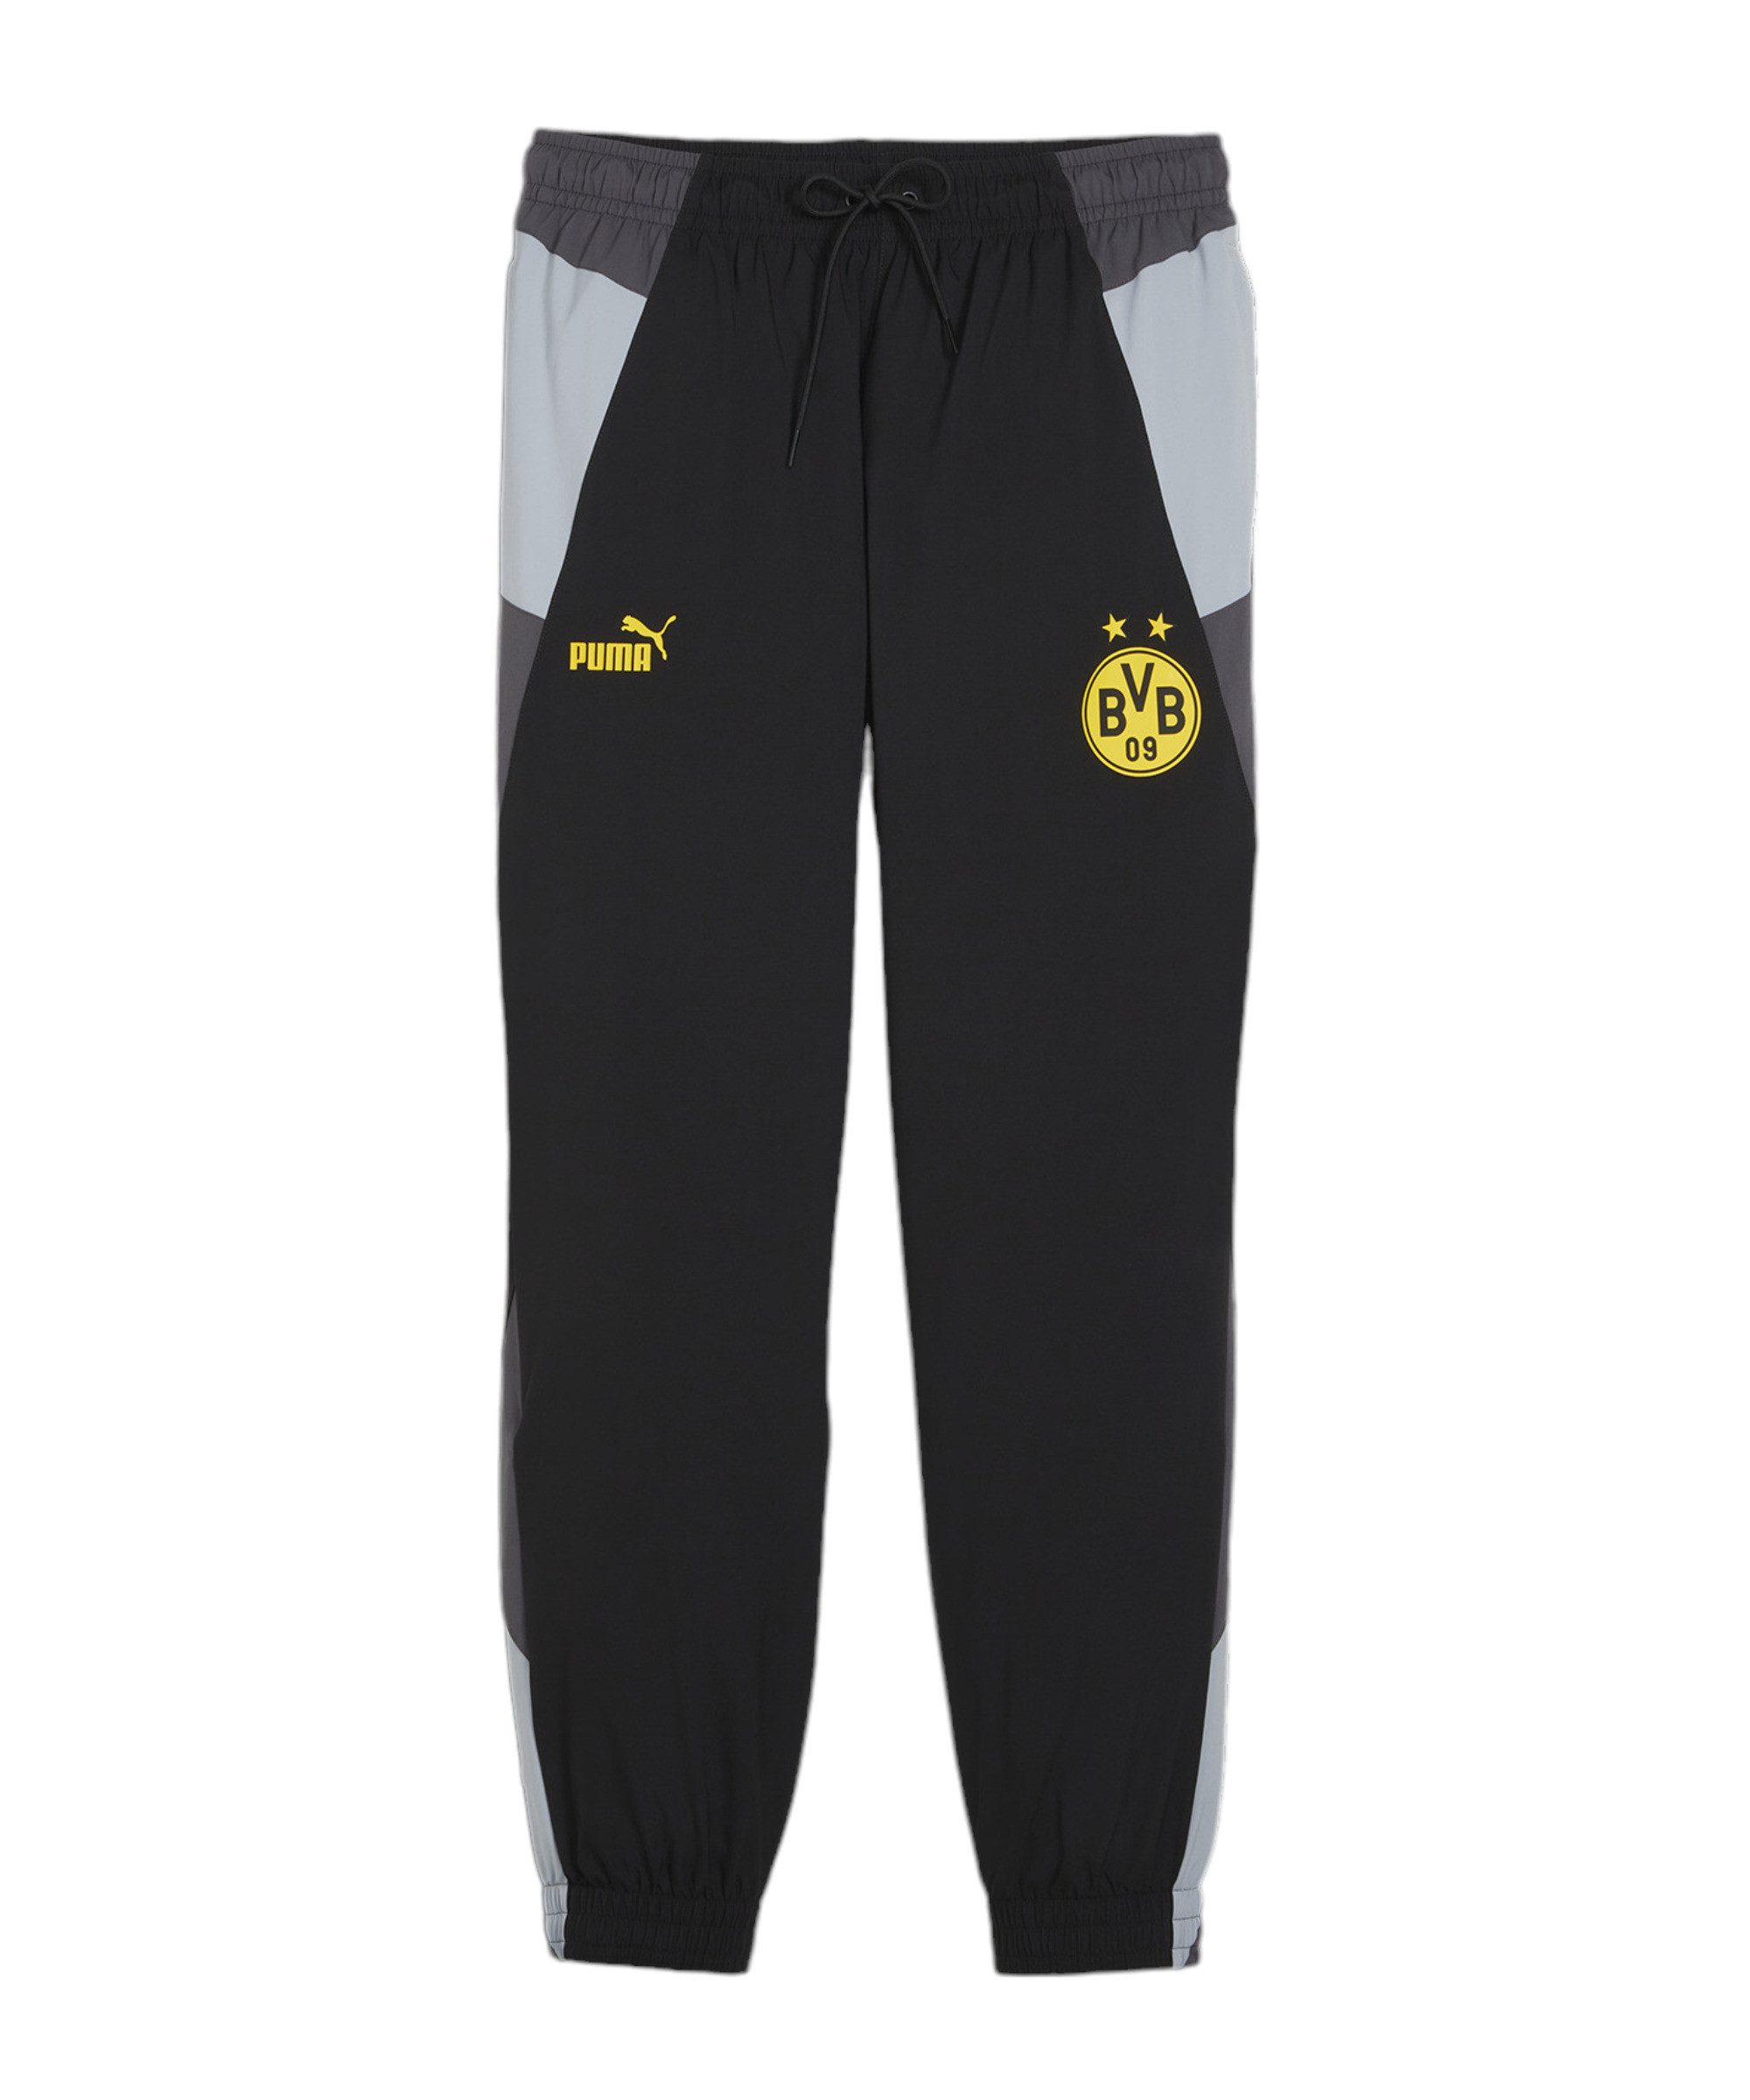 PUMA Sporthose BVB Dortmund Woven Jogginghose